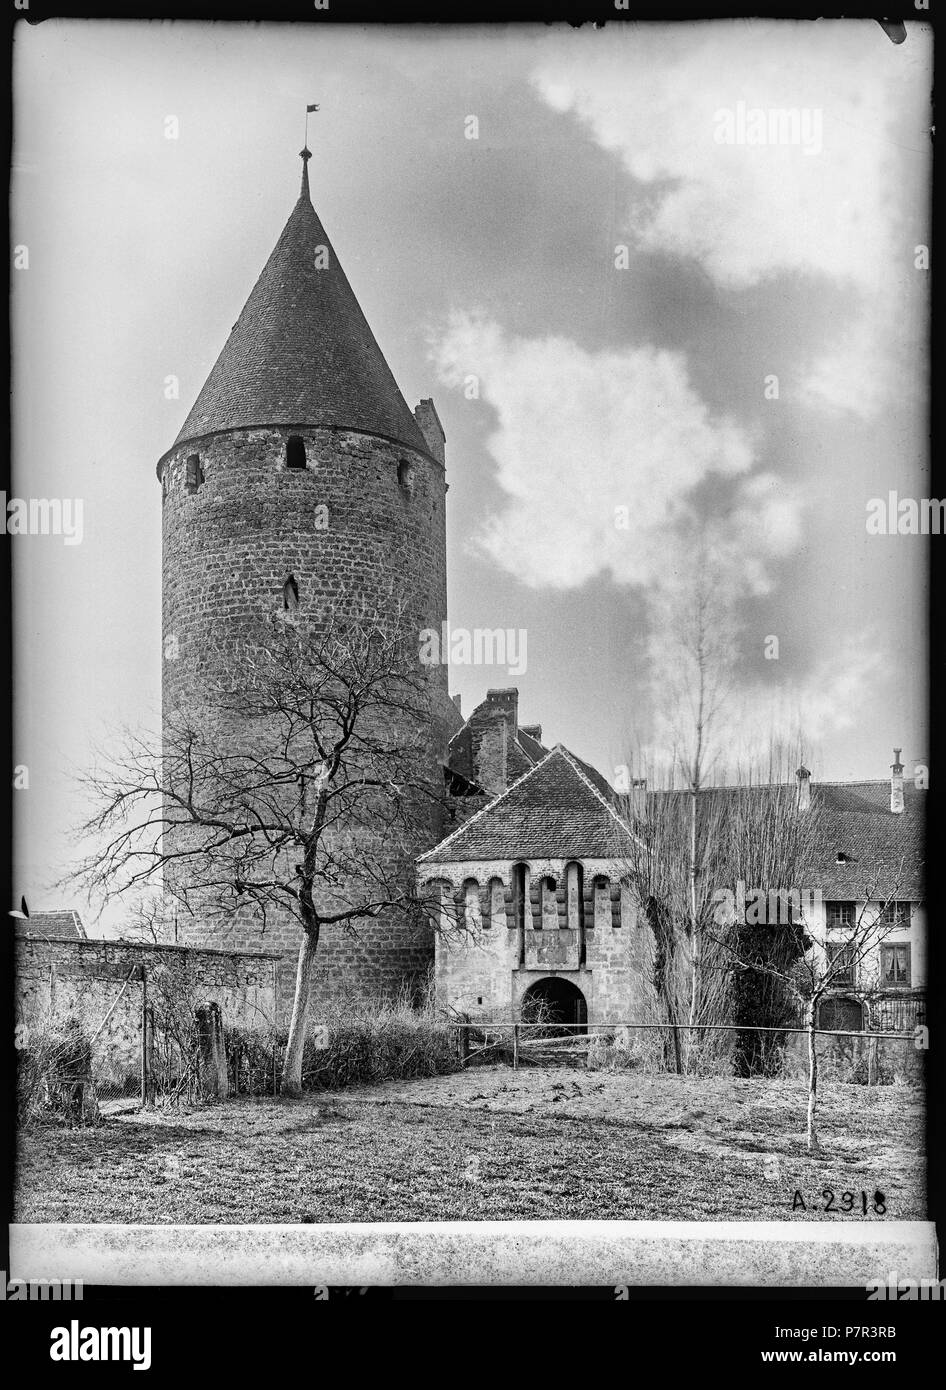 69 CH-NB - Estavayer-le-Lac, Château Chenaux, vue partiellle extérieure - Collection Max van Berchem - EAD-6881 Stock Photo